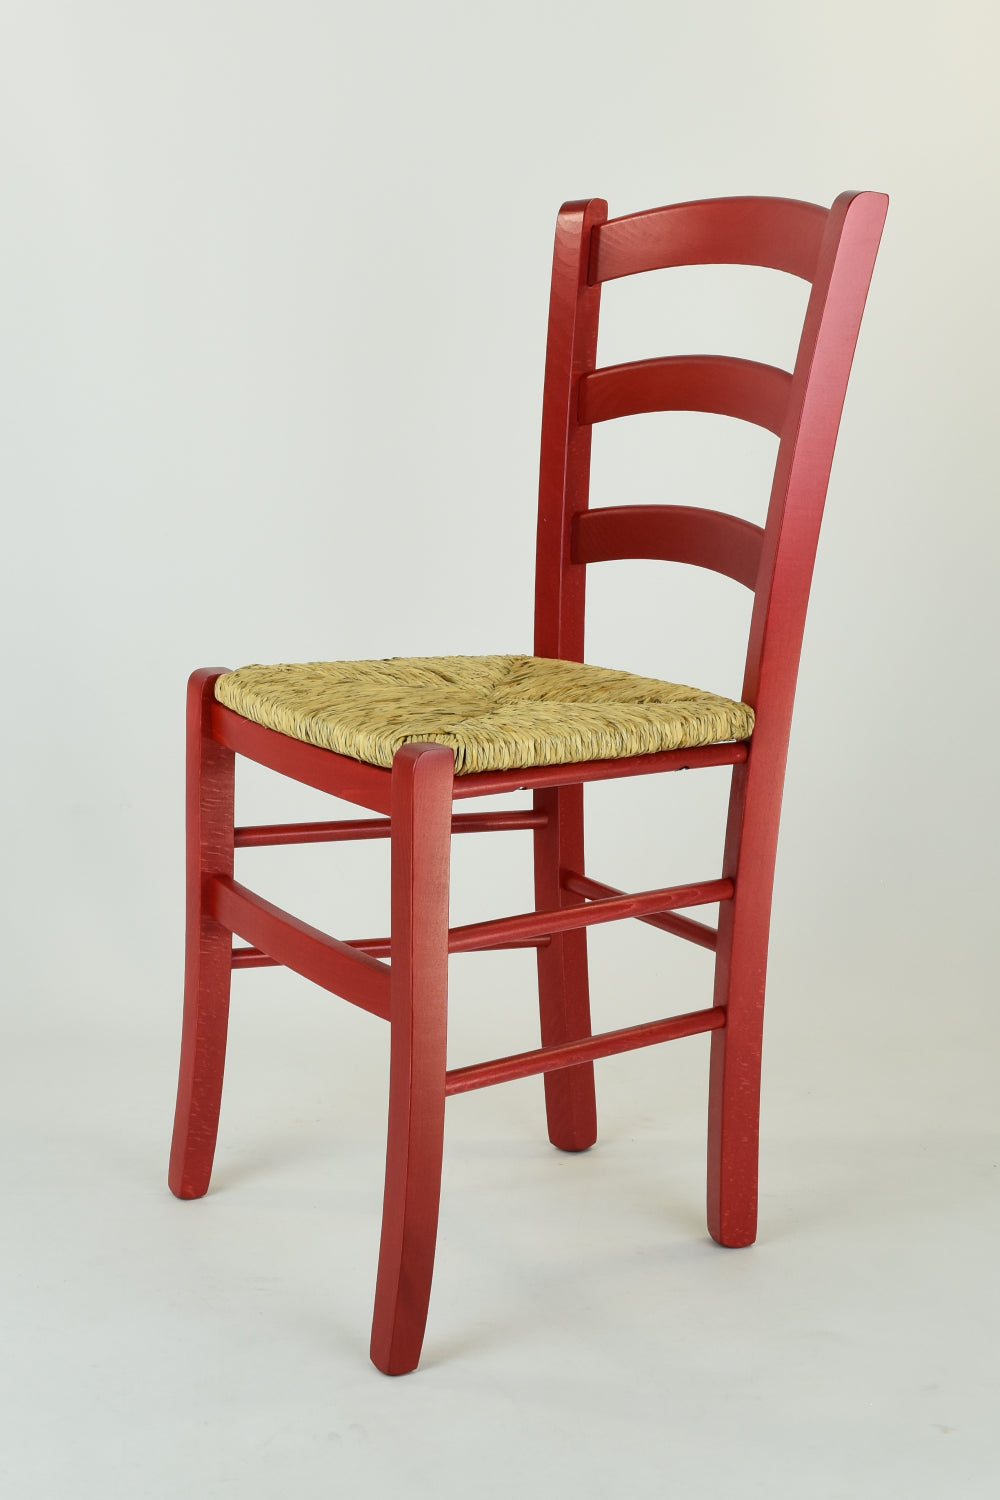 Tommychairs - Set 4 sillas Venezia para Cocina y Comedor, Estructura en Madera de Haya Color anilina roja y Asiento en Paja